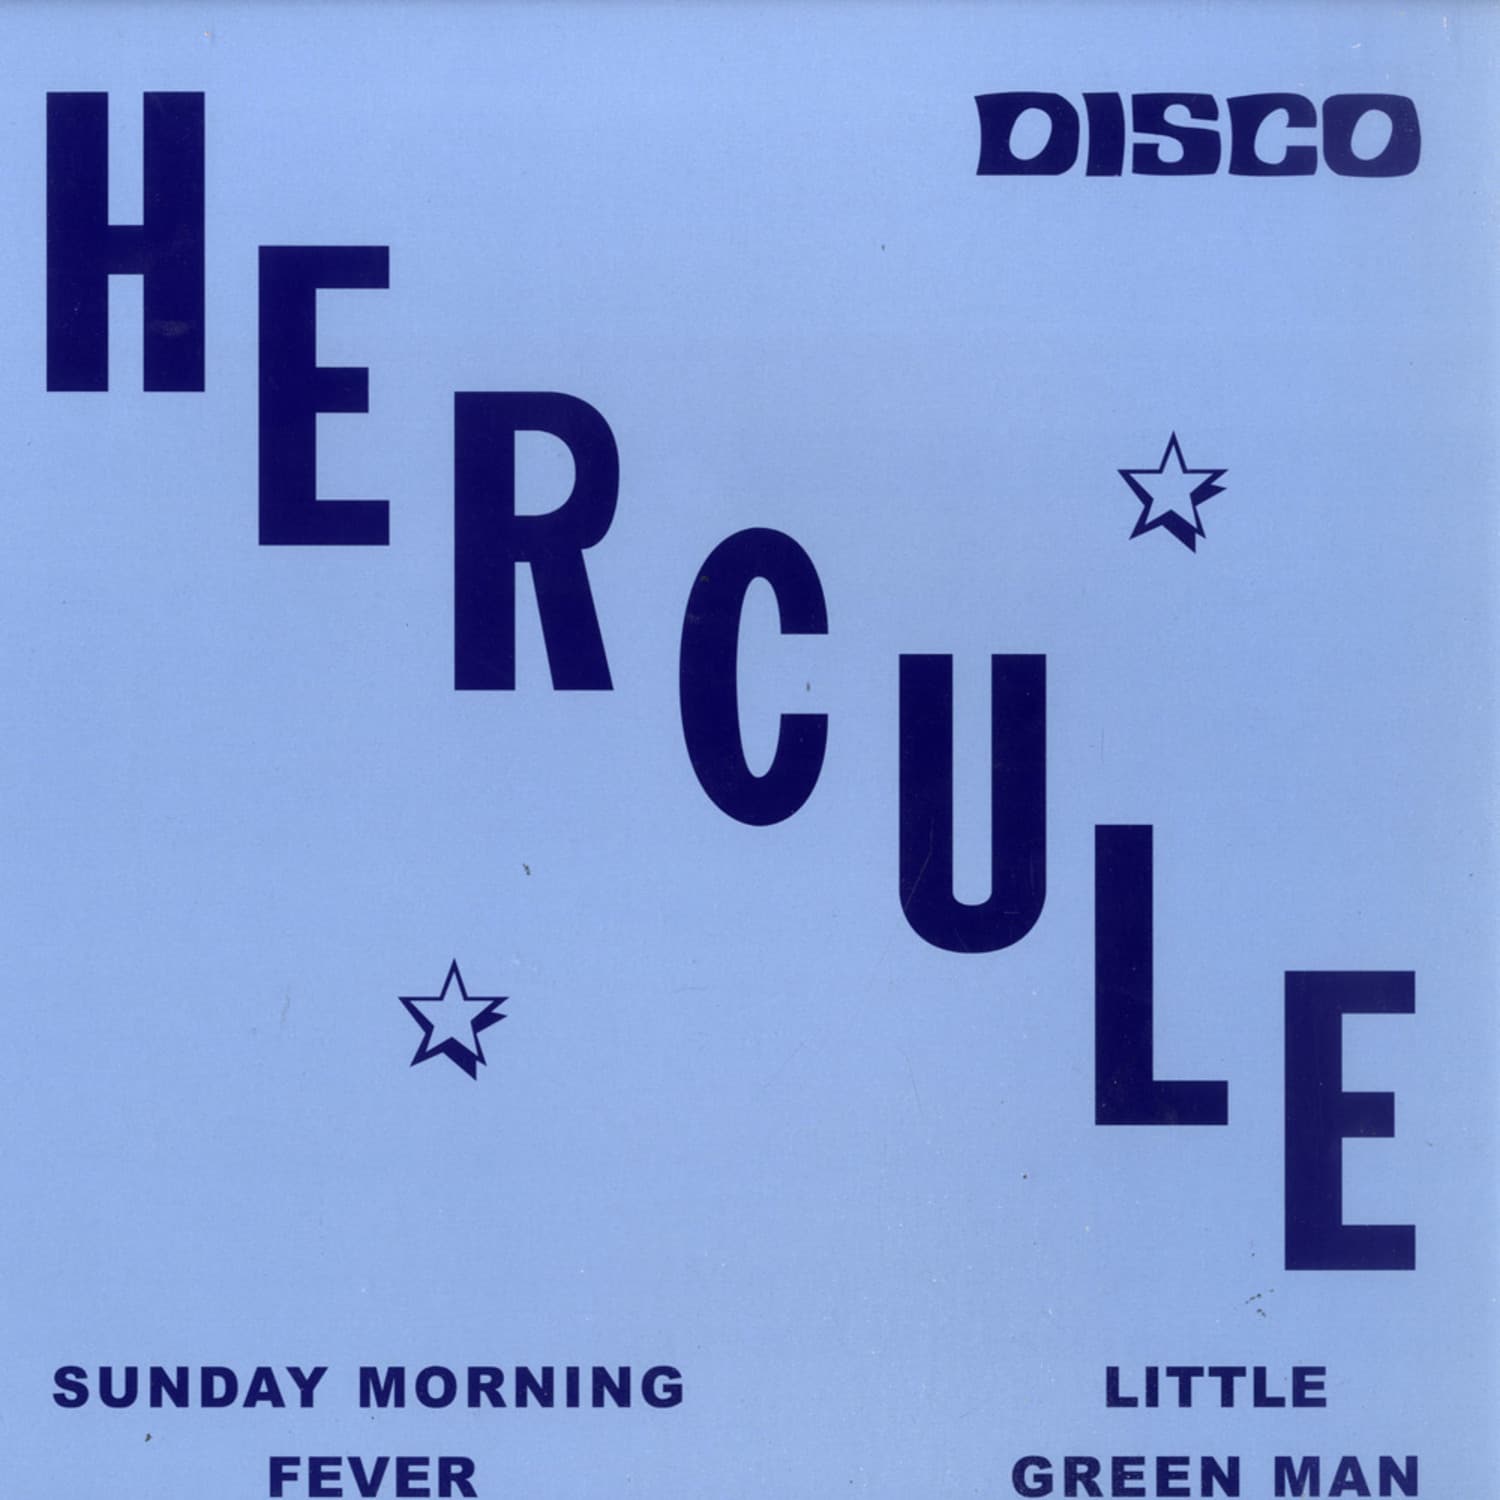 Hercule - SUNDAY MORNING FEVER/ LITTLE GREEN MAN